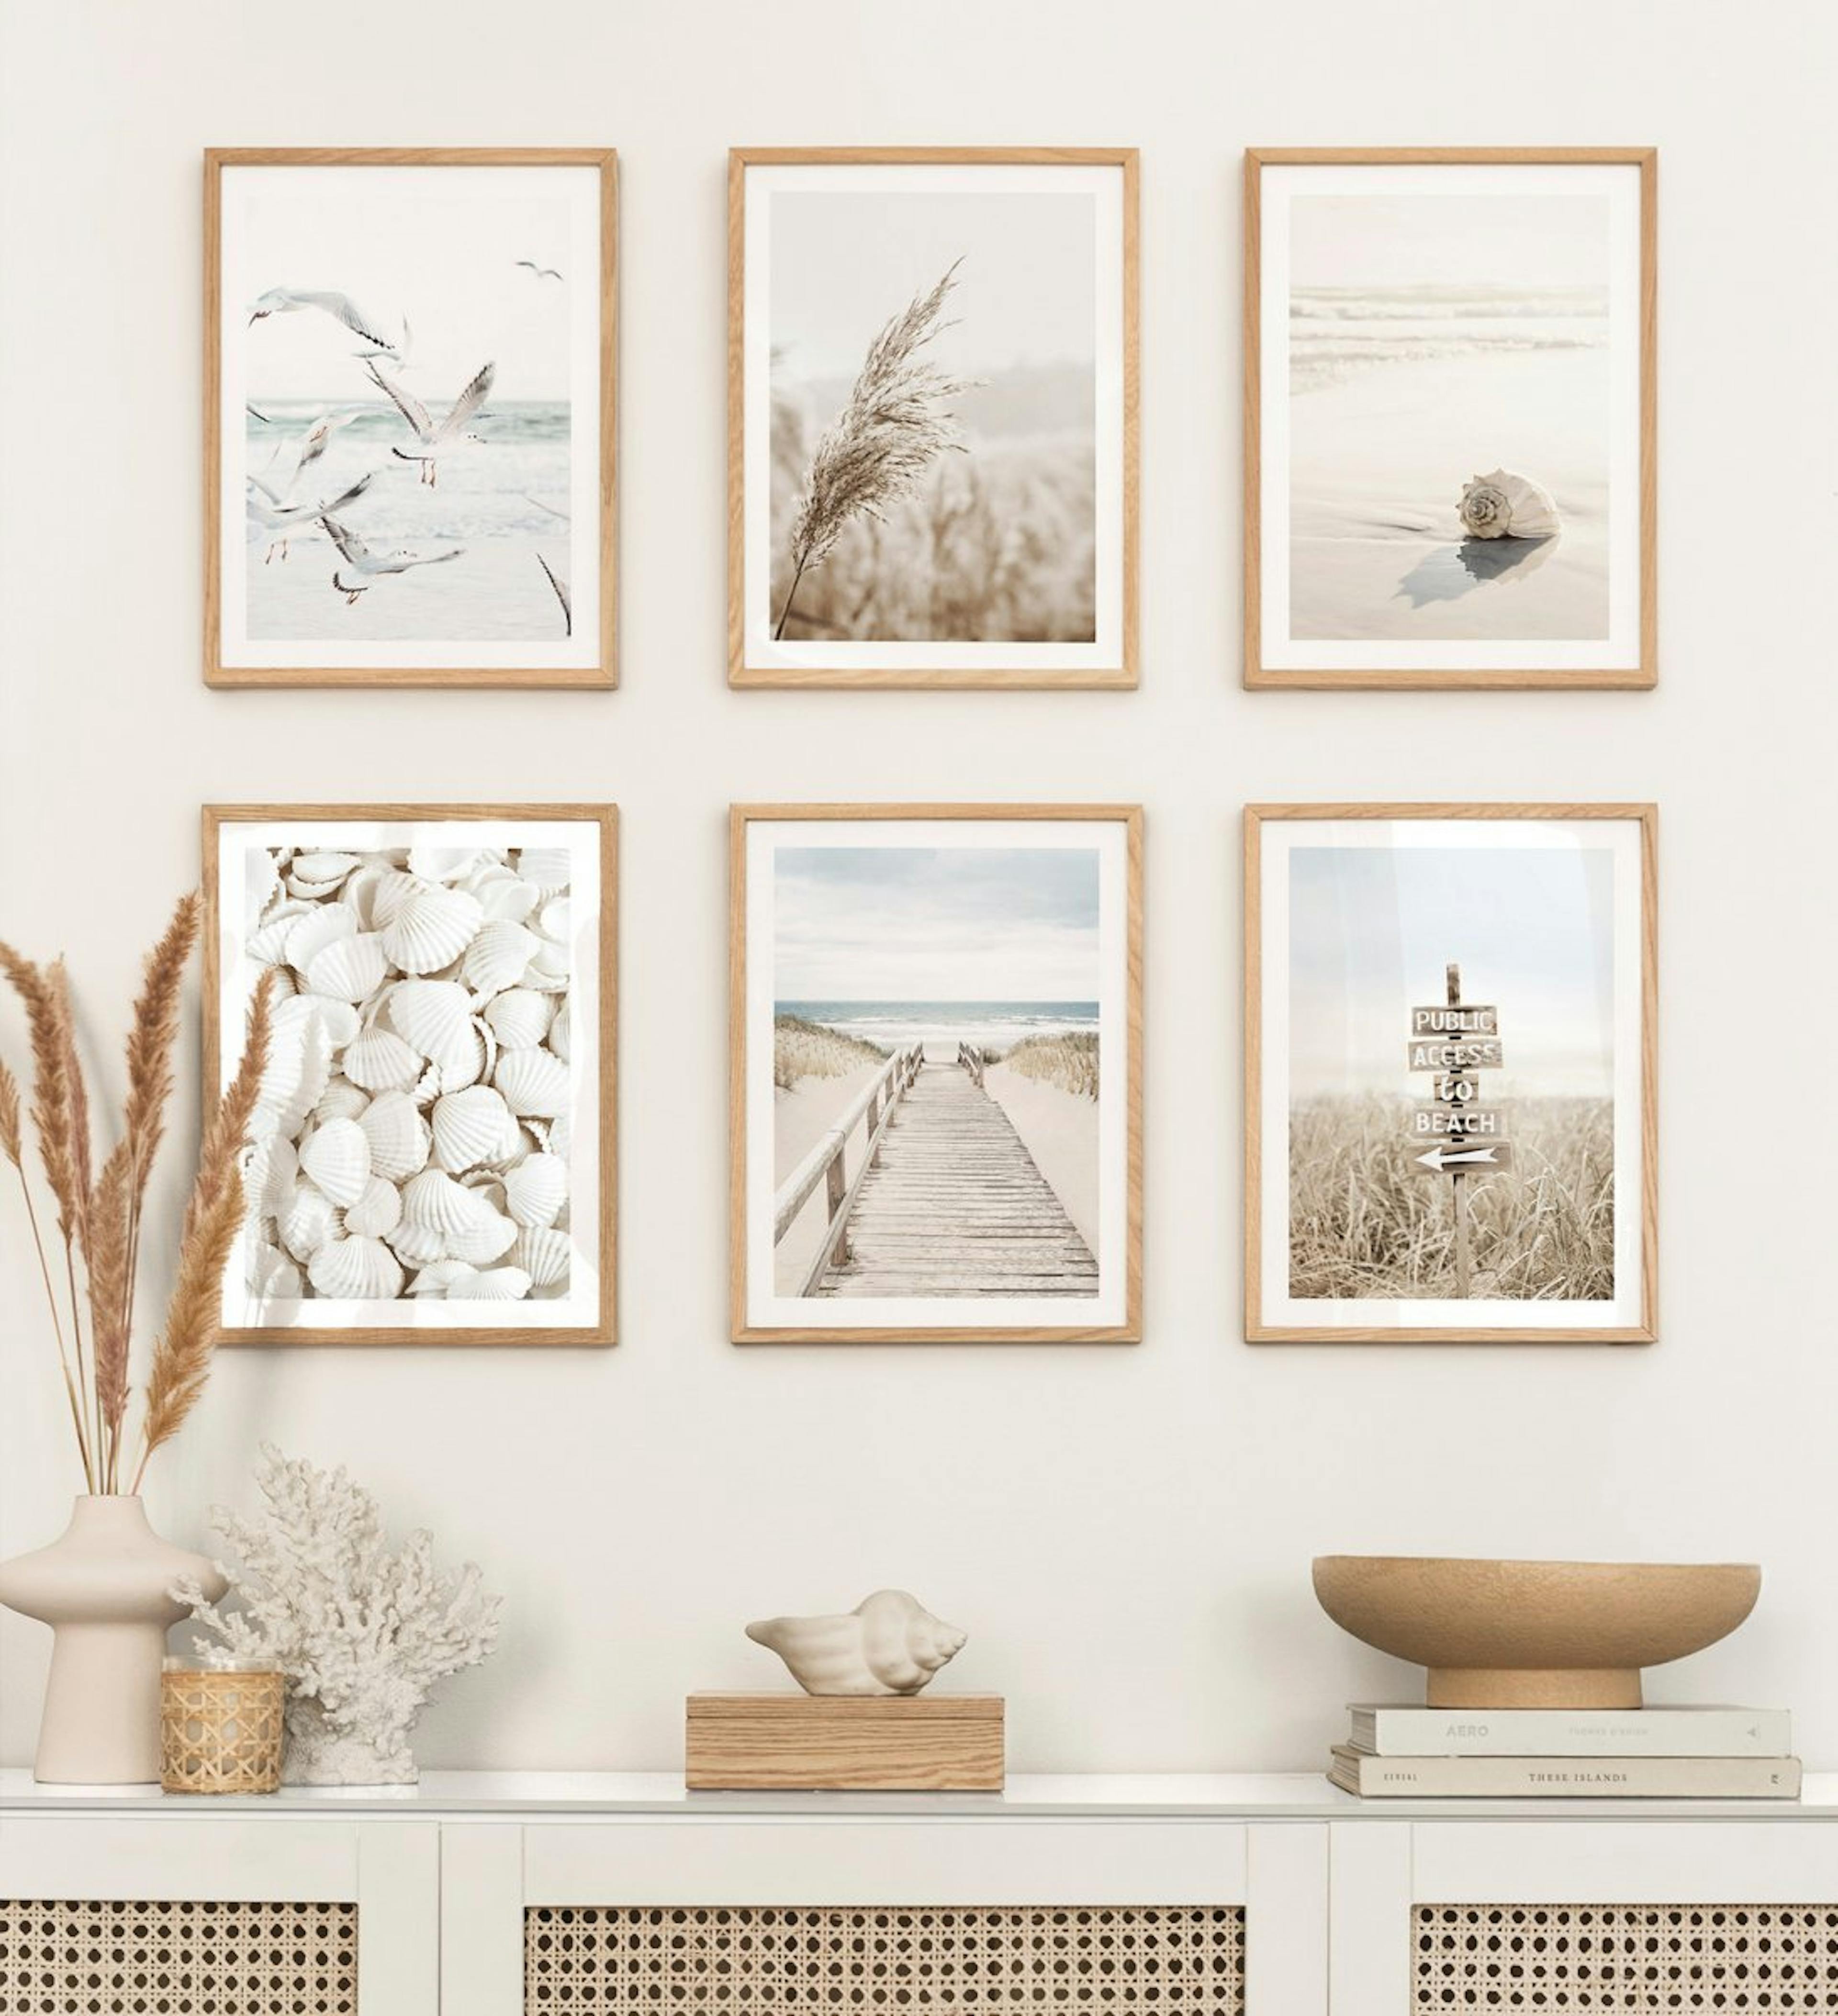 ベージュの穏やかなギャラリーの壁とリビングルーム用のオークフレーム付きのビーチテーマ